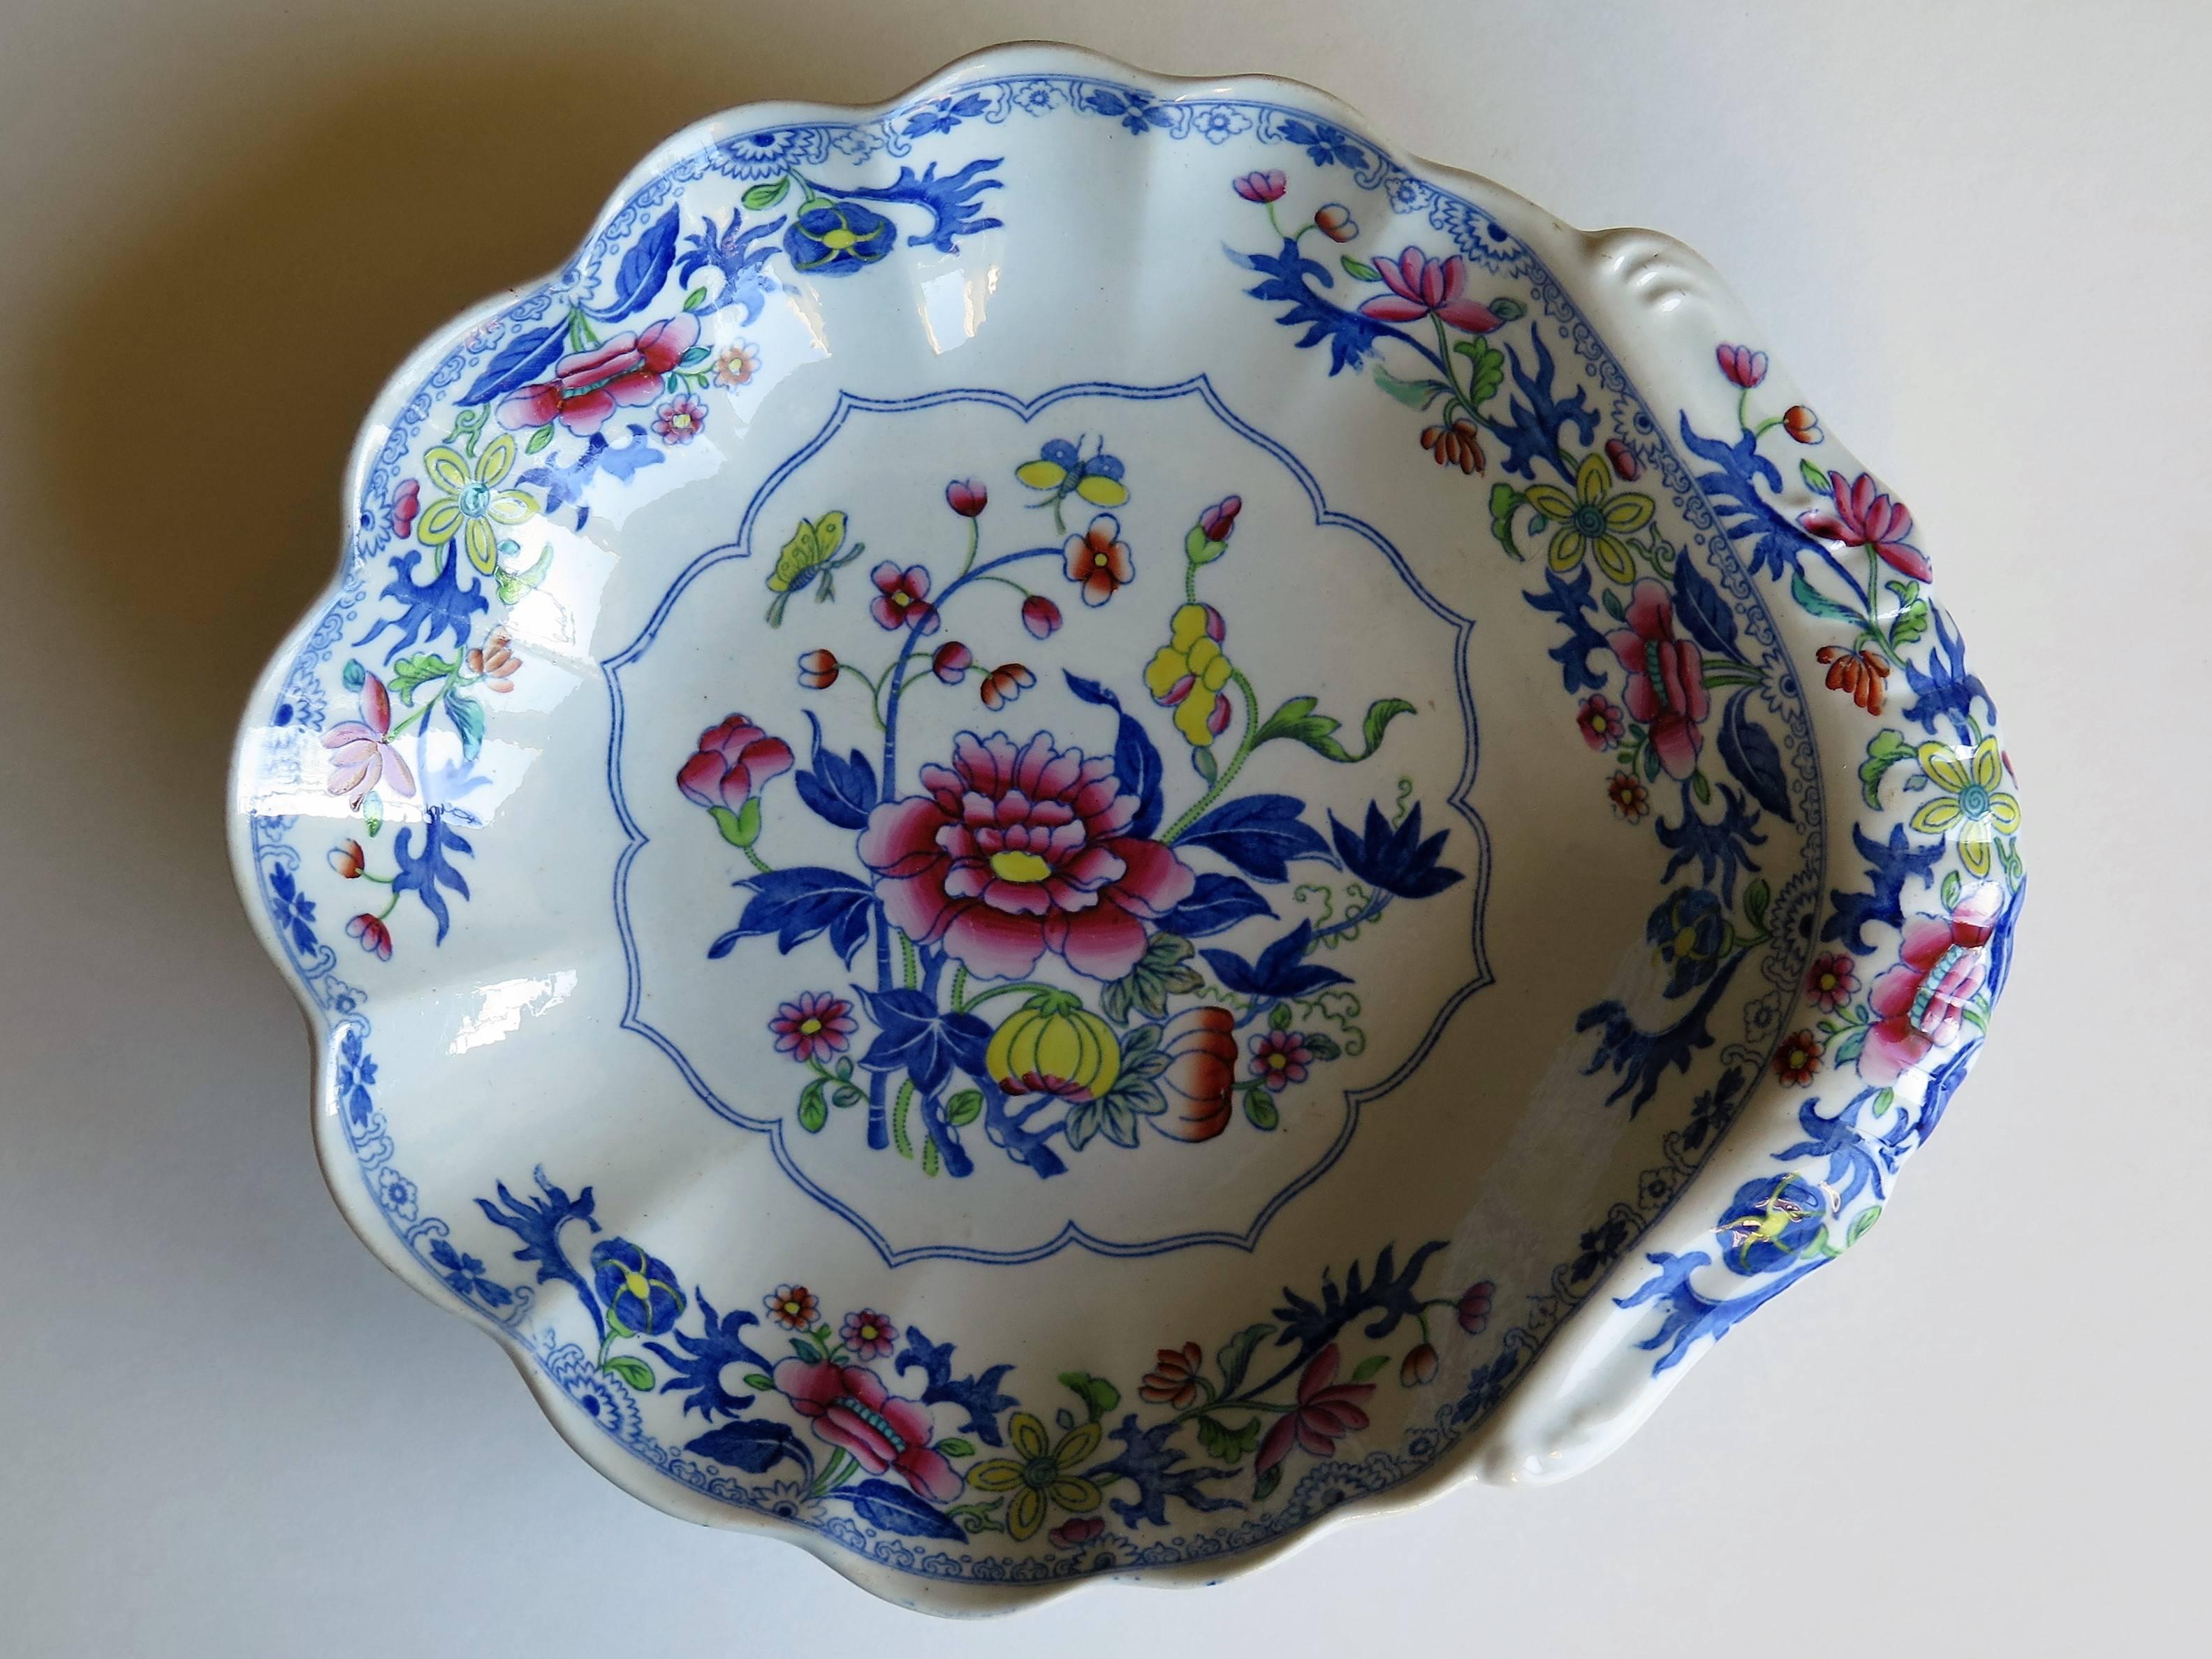 Si tratta di un piatto da dessert in stone china (ceramica Ironstone) dell'inizio del XIX secolo con forma di conchiglia scanalata, prodotto da Spode e risalente al periodo George 111rd, circa 1820.

È decorato con uno dei motivi floreali